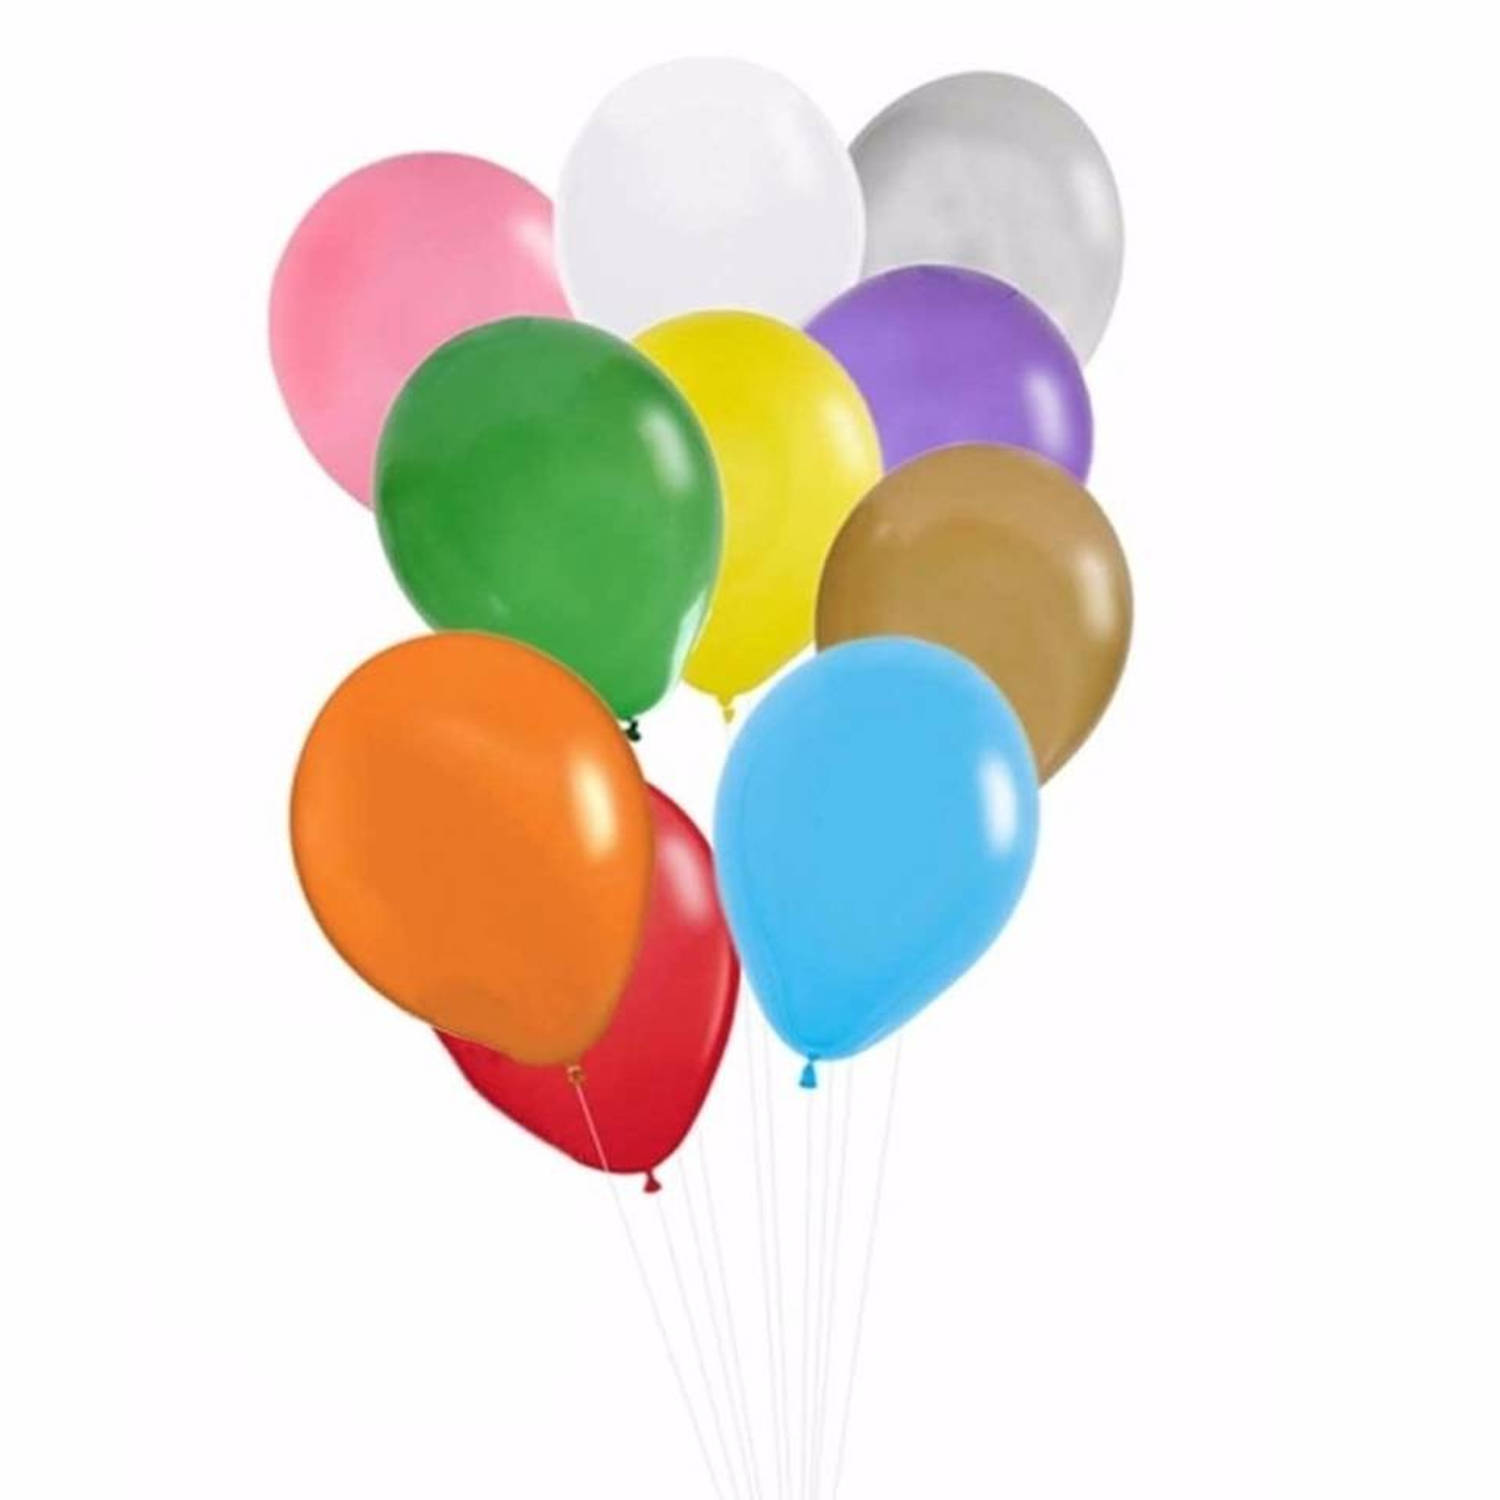 Almachtig Oranje Omhoog gaan 50 stuks ballonnen in verschillende kleuren - Ballonnen | Blokker